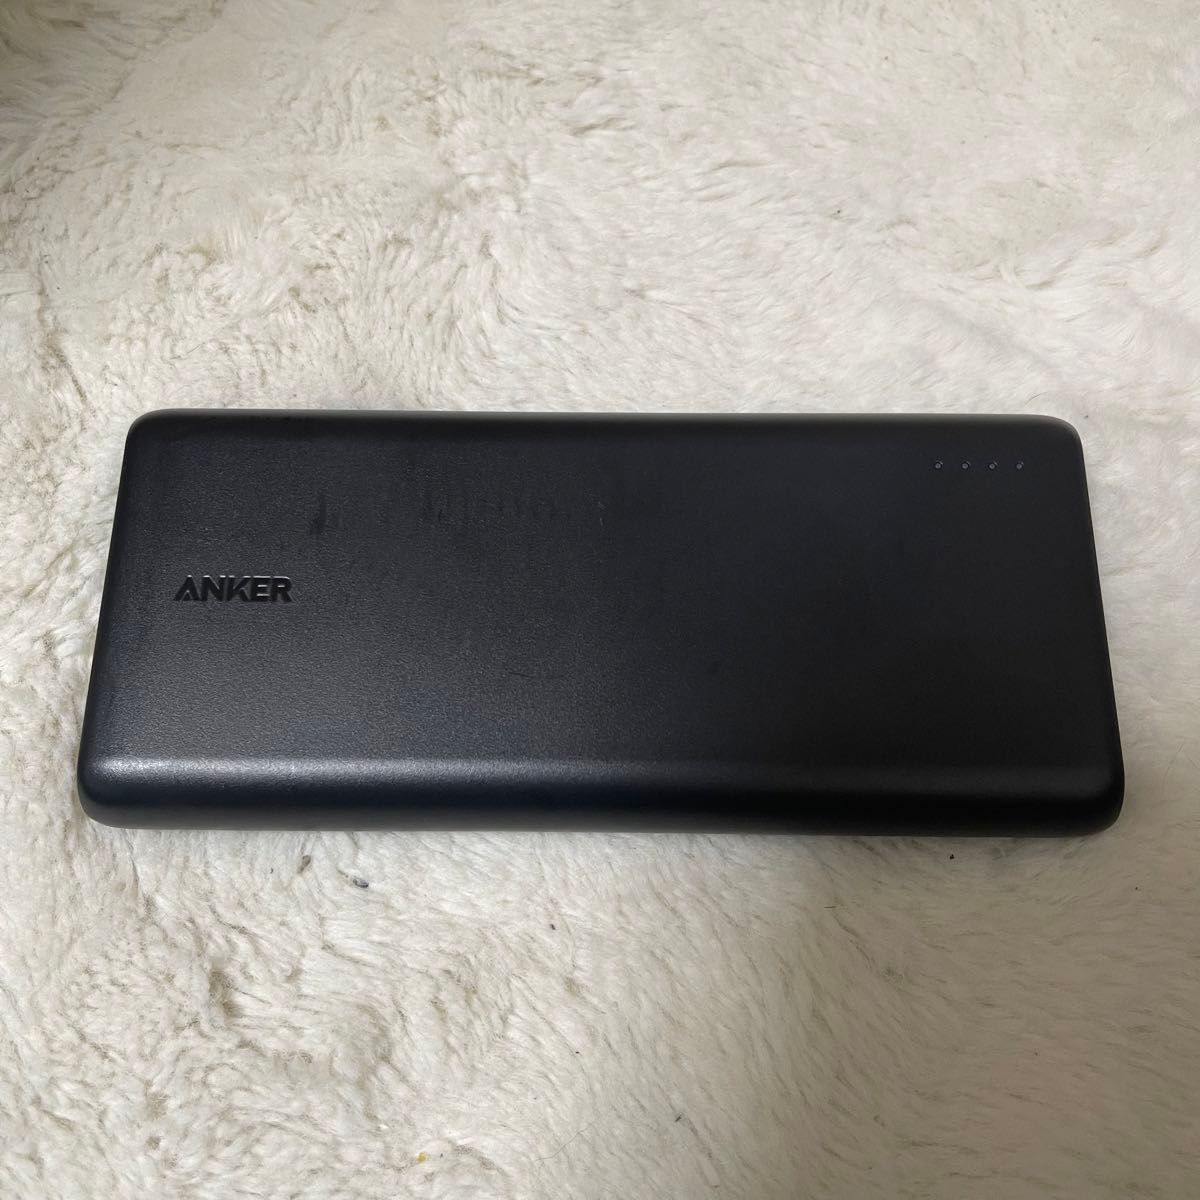 【美品】Anker アンカー PowerCore 26800 モバイルバッテリー  大容量 ブラック PSE技術基準適合品